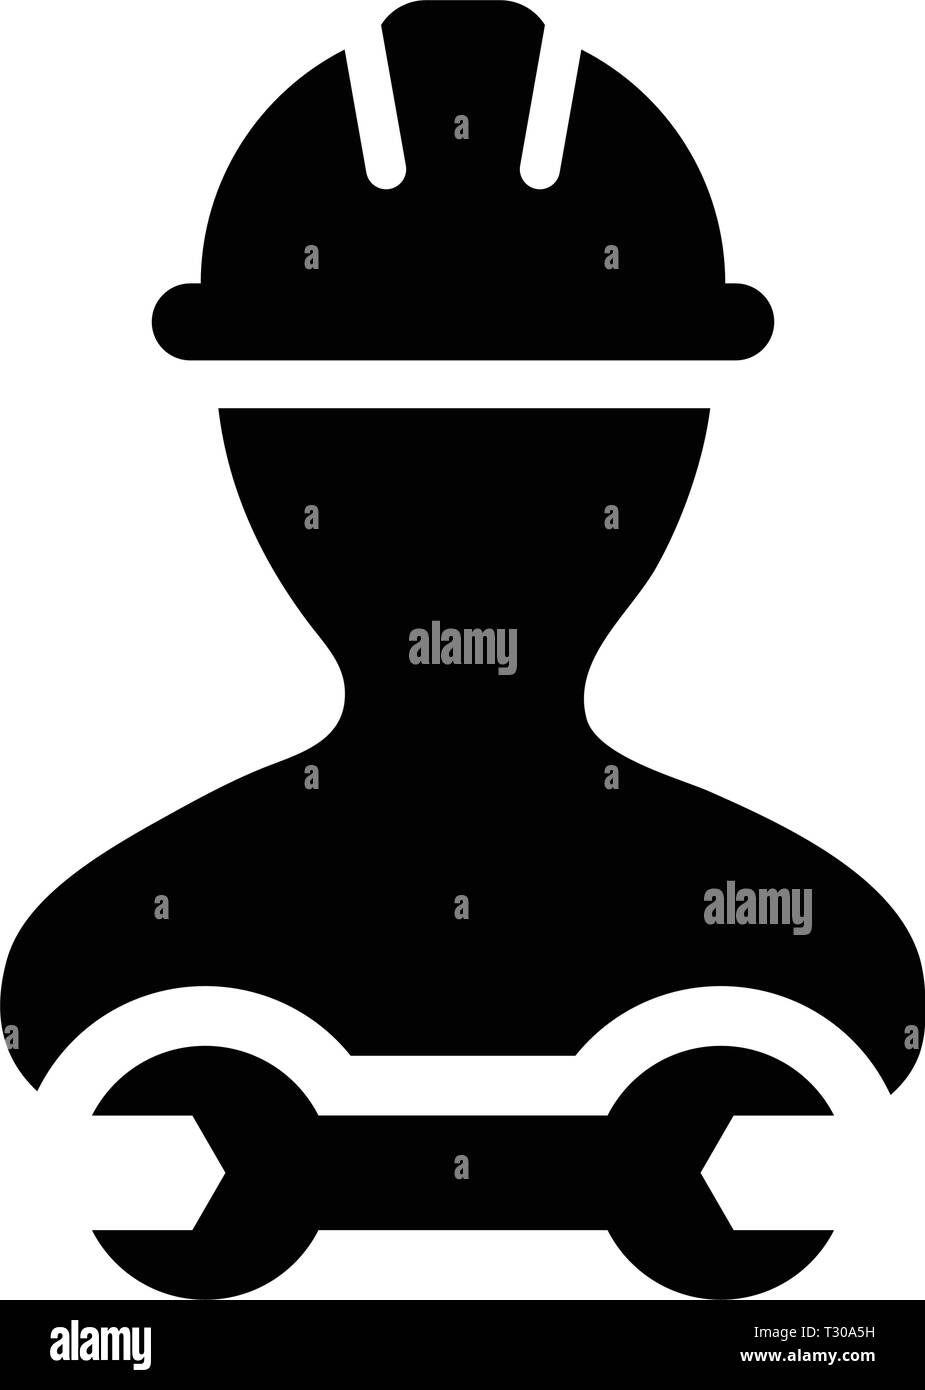 Aufsichtsplatz-symbol Vektor männlichen Bauarbeiter person Profil Avatar mit Schutzhelm Helm und Schraubenschlüssel oder Schraubenschlüssel Werkzeug in Glyph Piktogramm Abbildung Stock Vektor